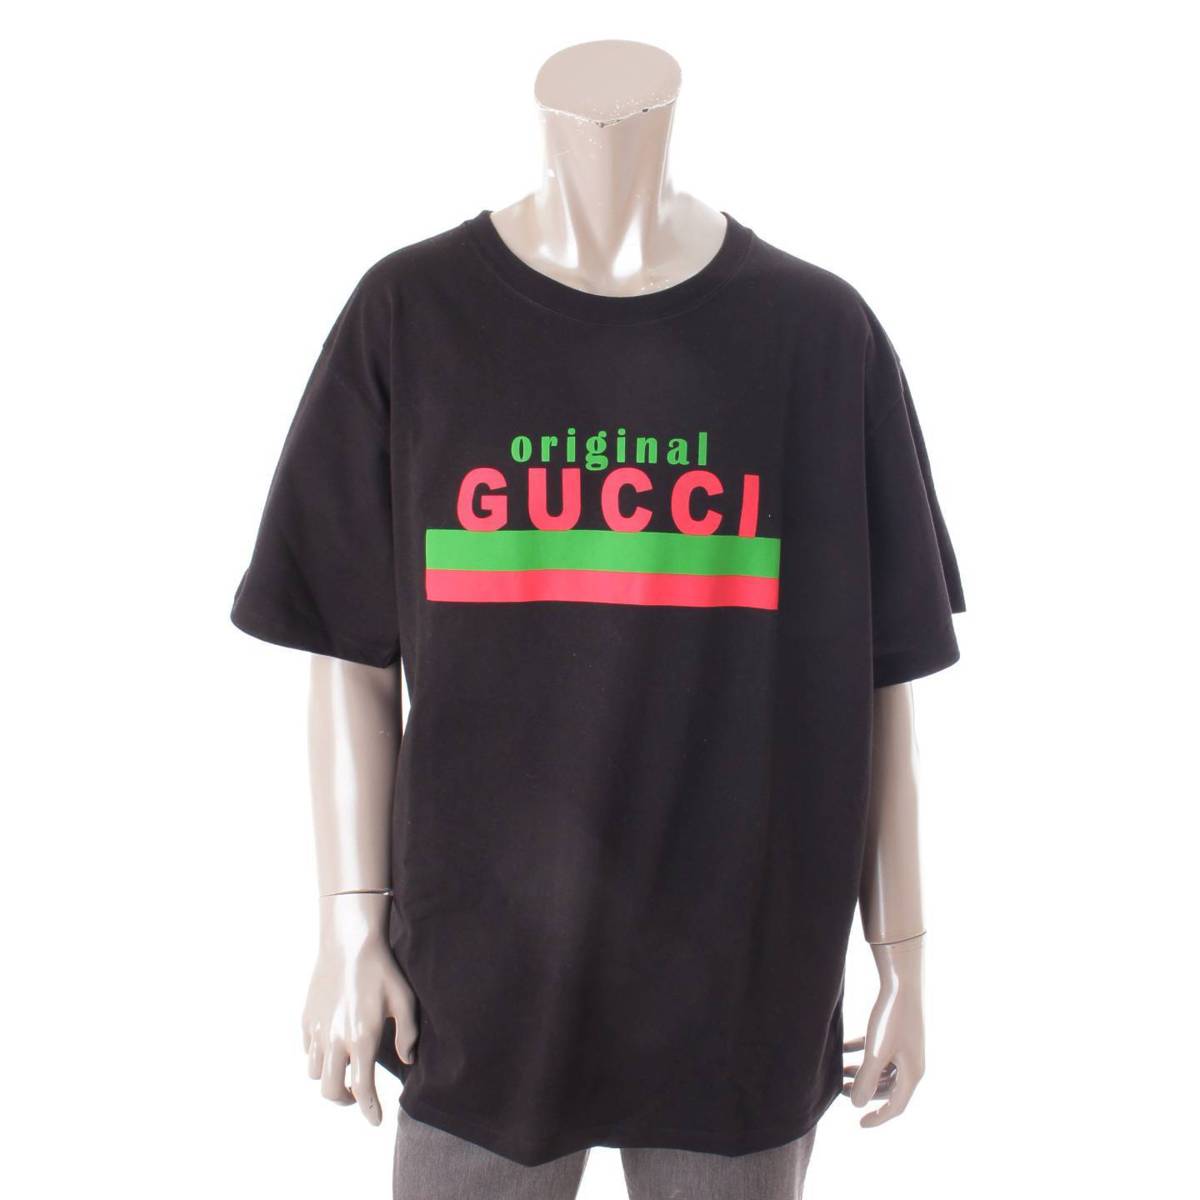 Ob`(Gucci) original GUCCI I[o[TCY TVc 616036 ubN L